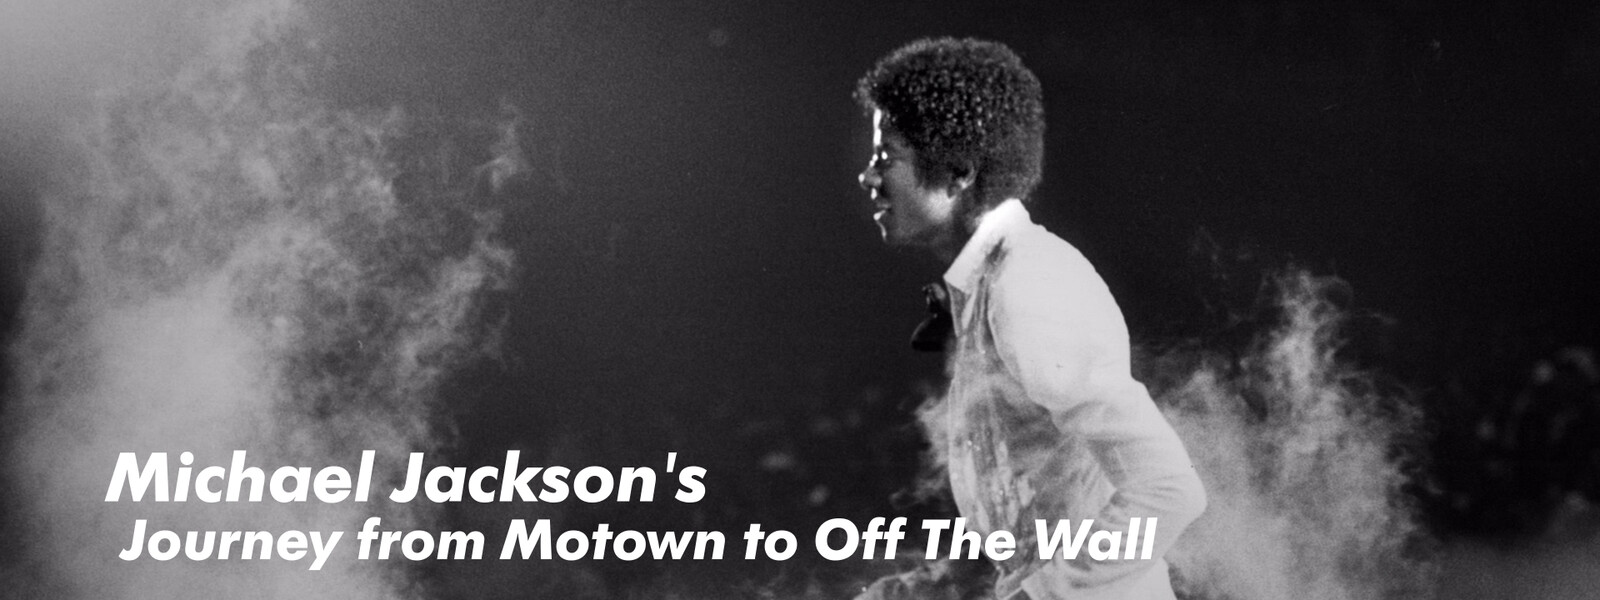 マイケル･ジャクソン：映画「Michael Jackson's Journey from Motown to Off The Wall」の動画 - マイケル・ジャクソン THIS IS IT